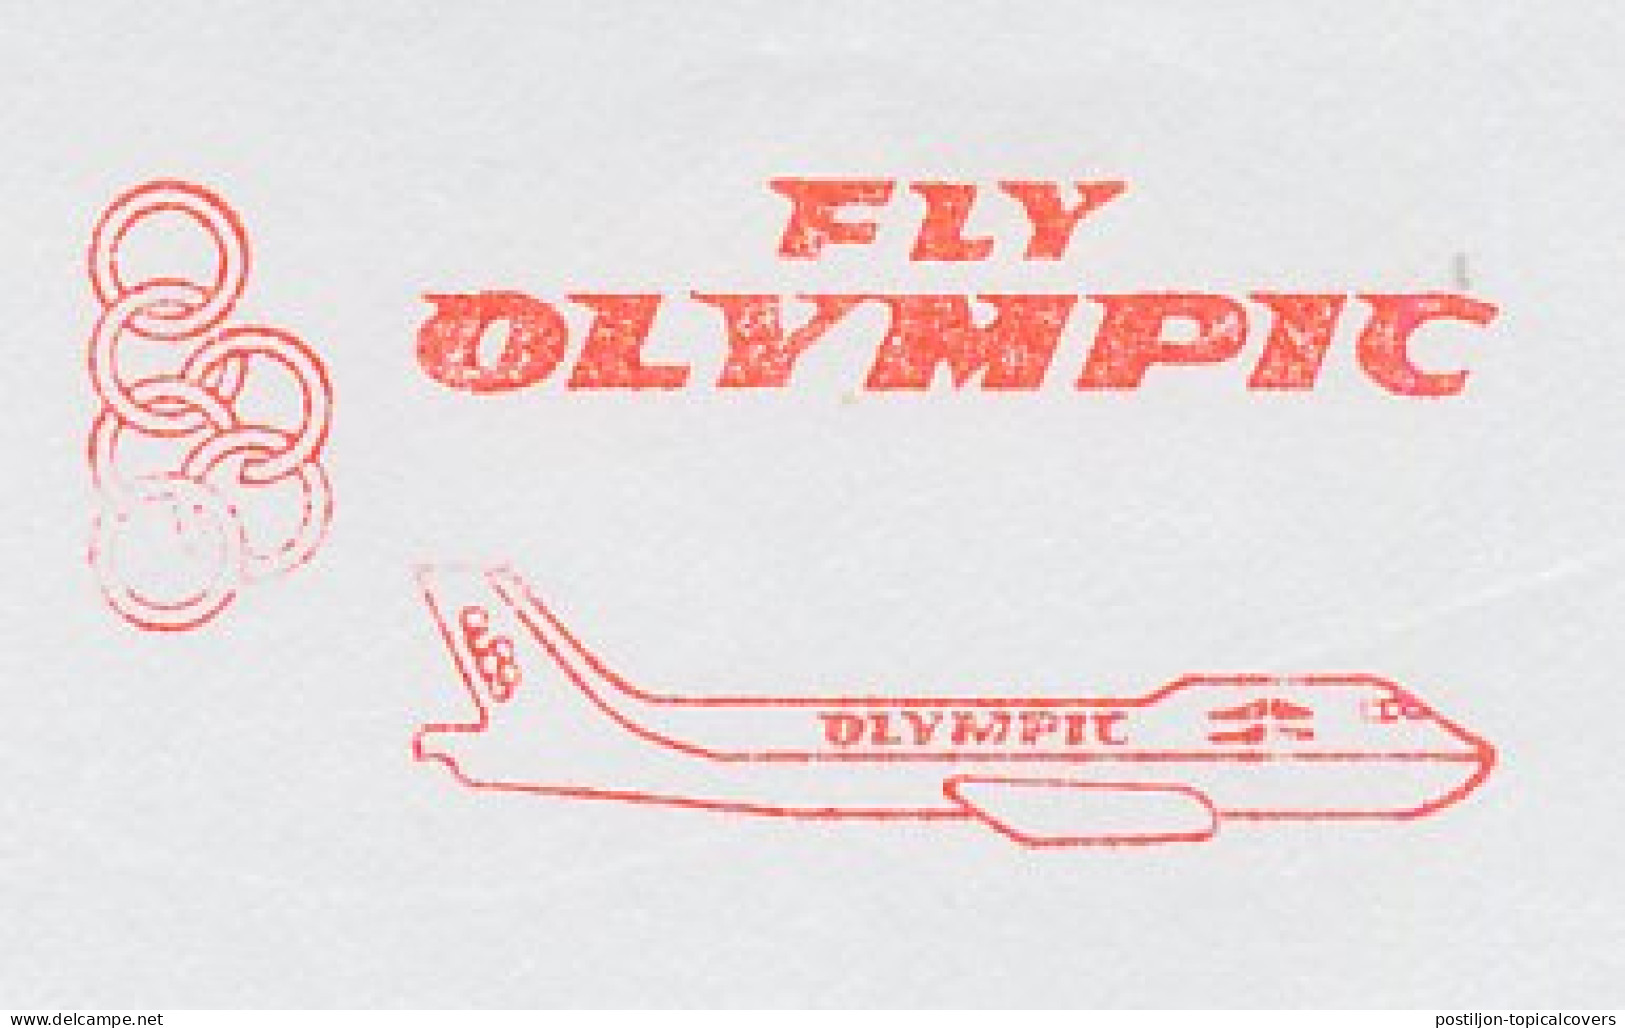 Meter Top Cut Netherlands 1992 Olympic Airways - Airplanes